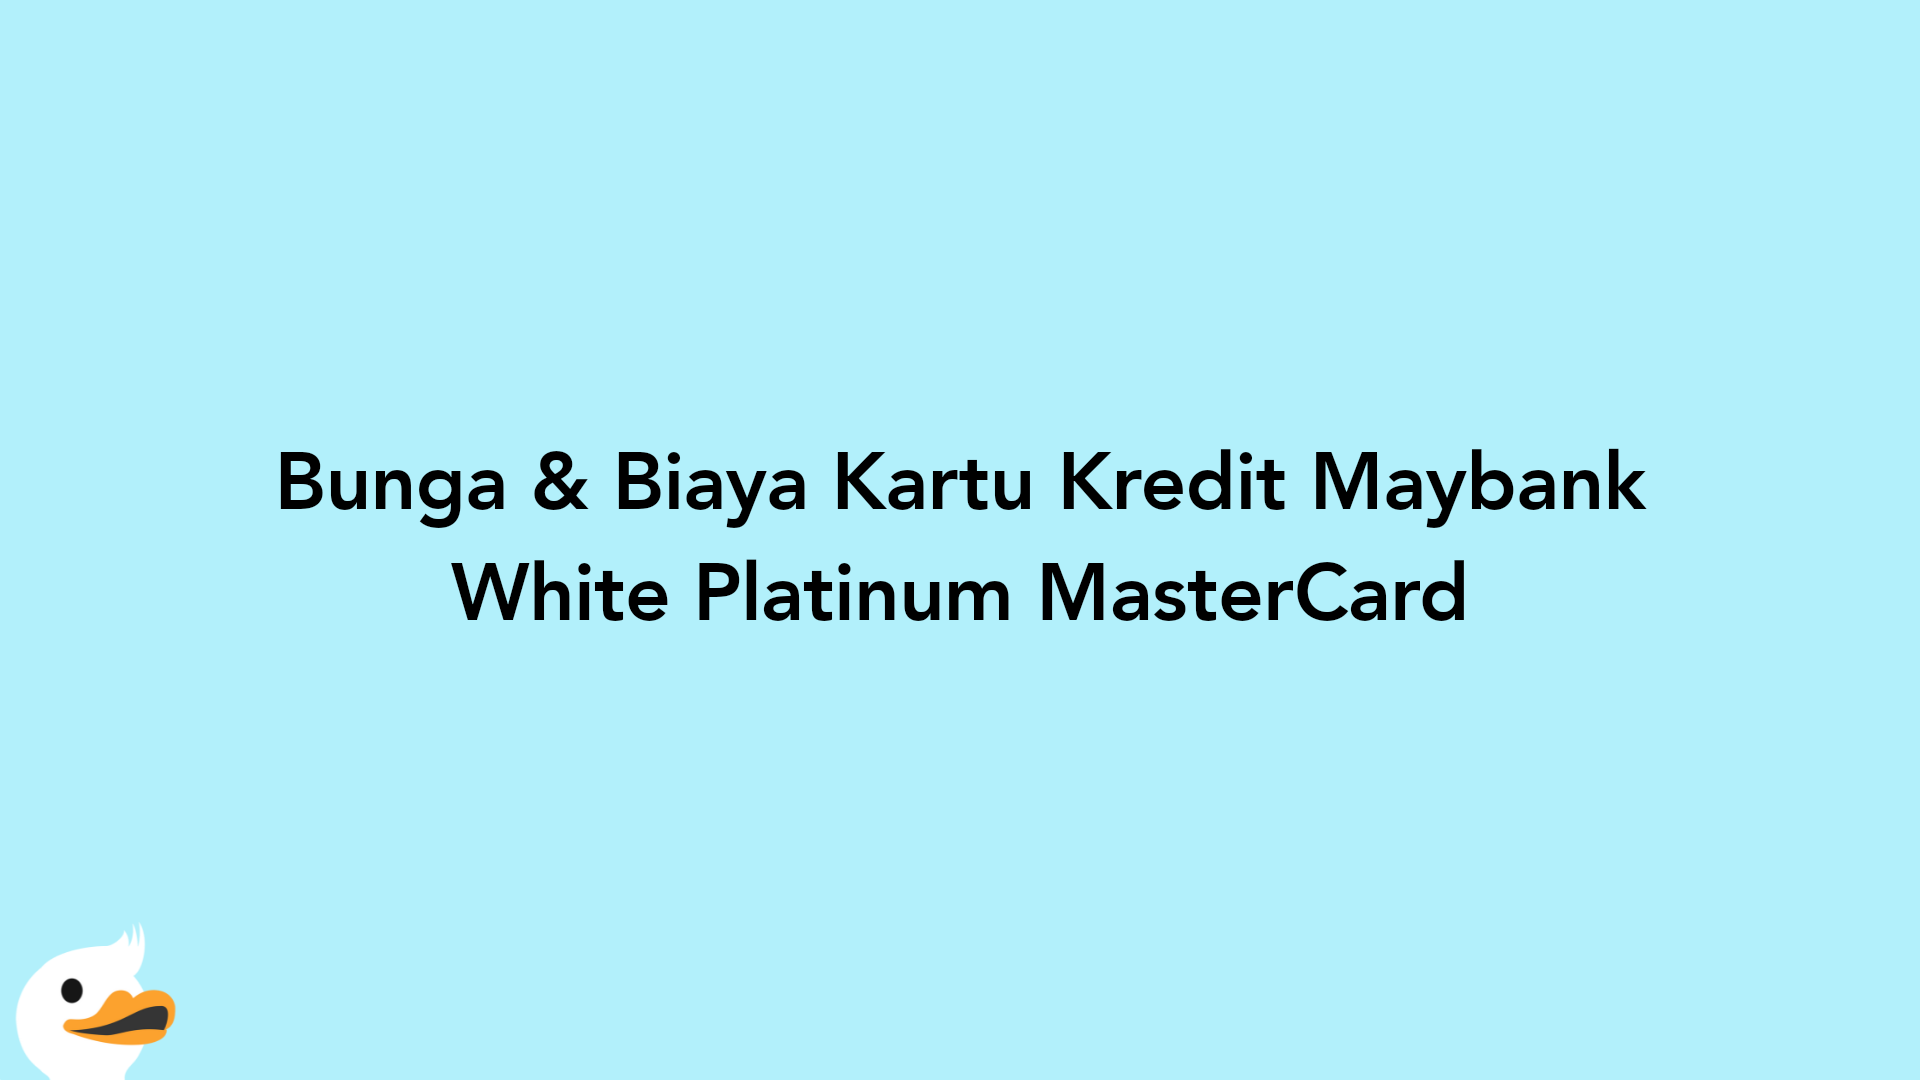 Bunga & Biaya Kartu Kredit Maybank White Platinum MasterCard